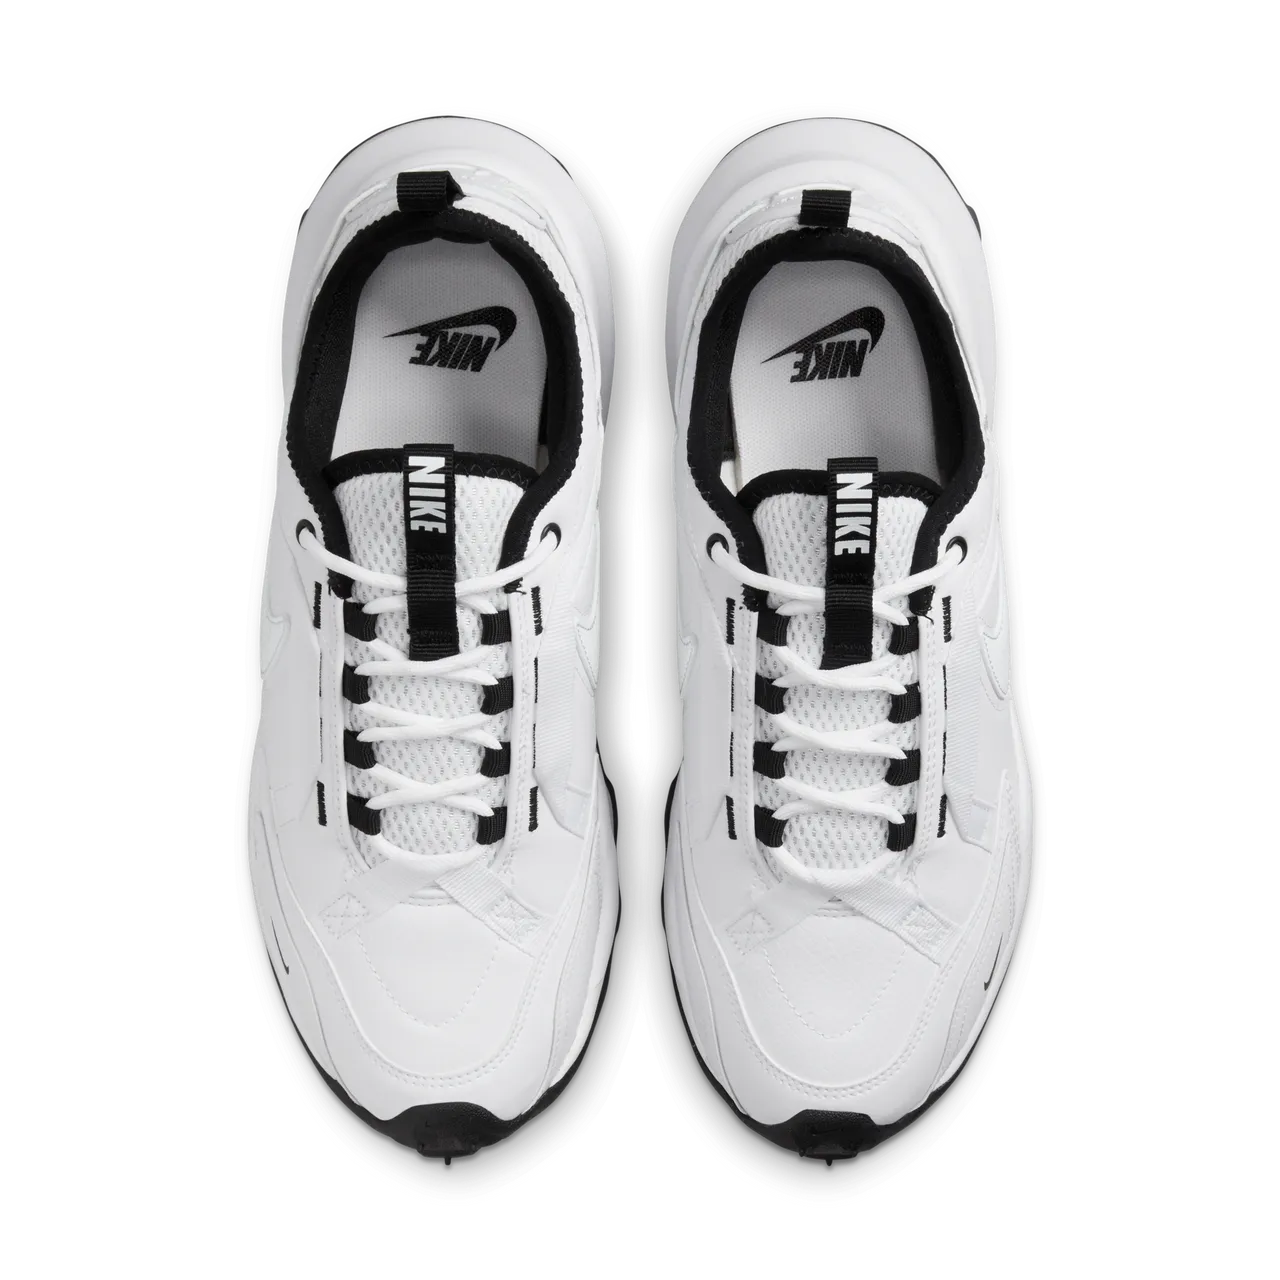 Nike TC 7900 Women's Shoes - White